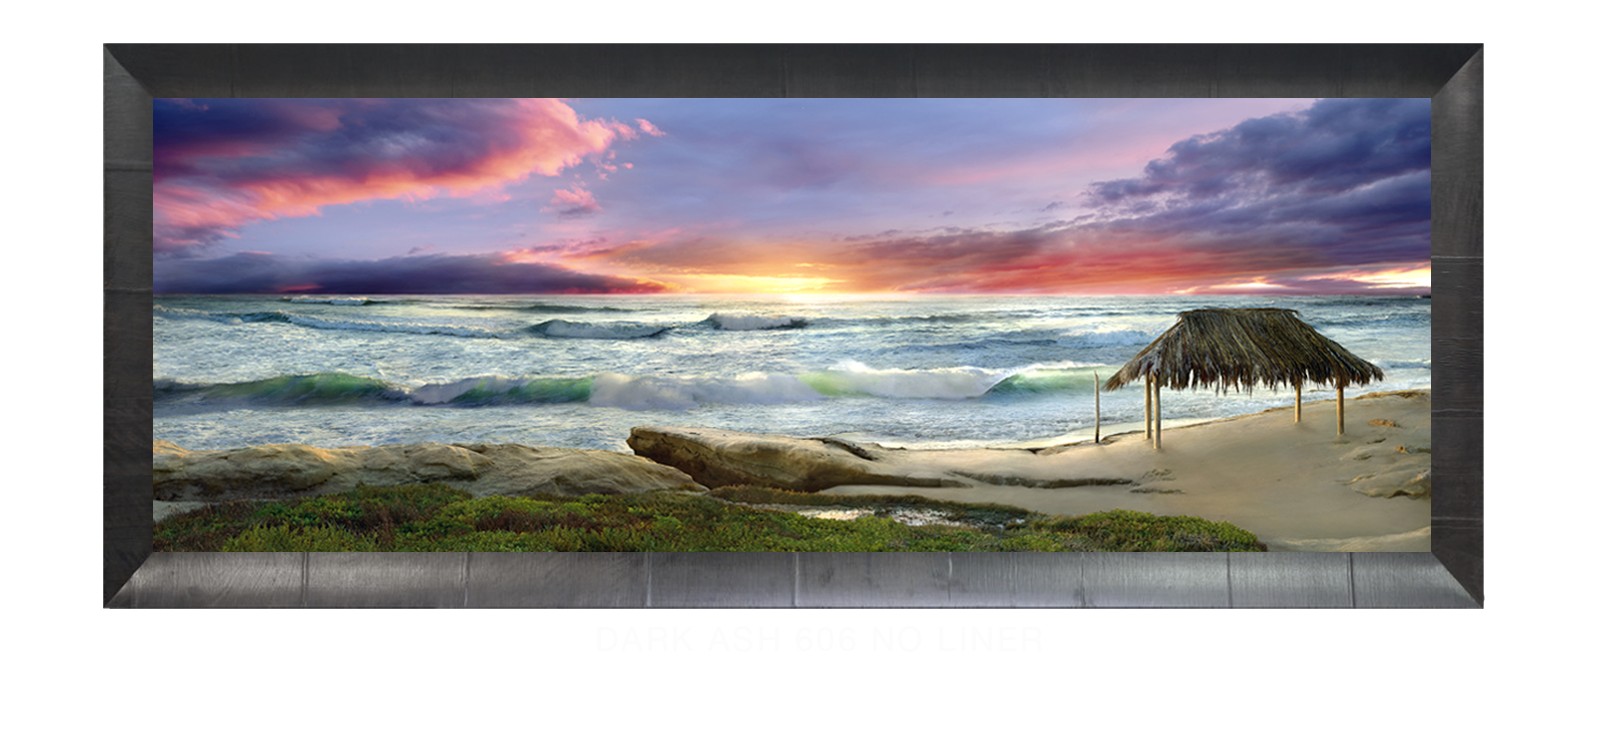 19AWAITANCE Dark Ash 606 w_No Liner T